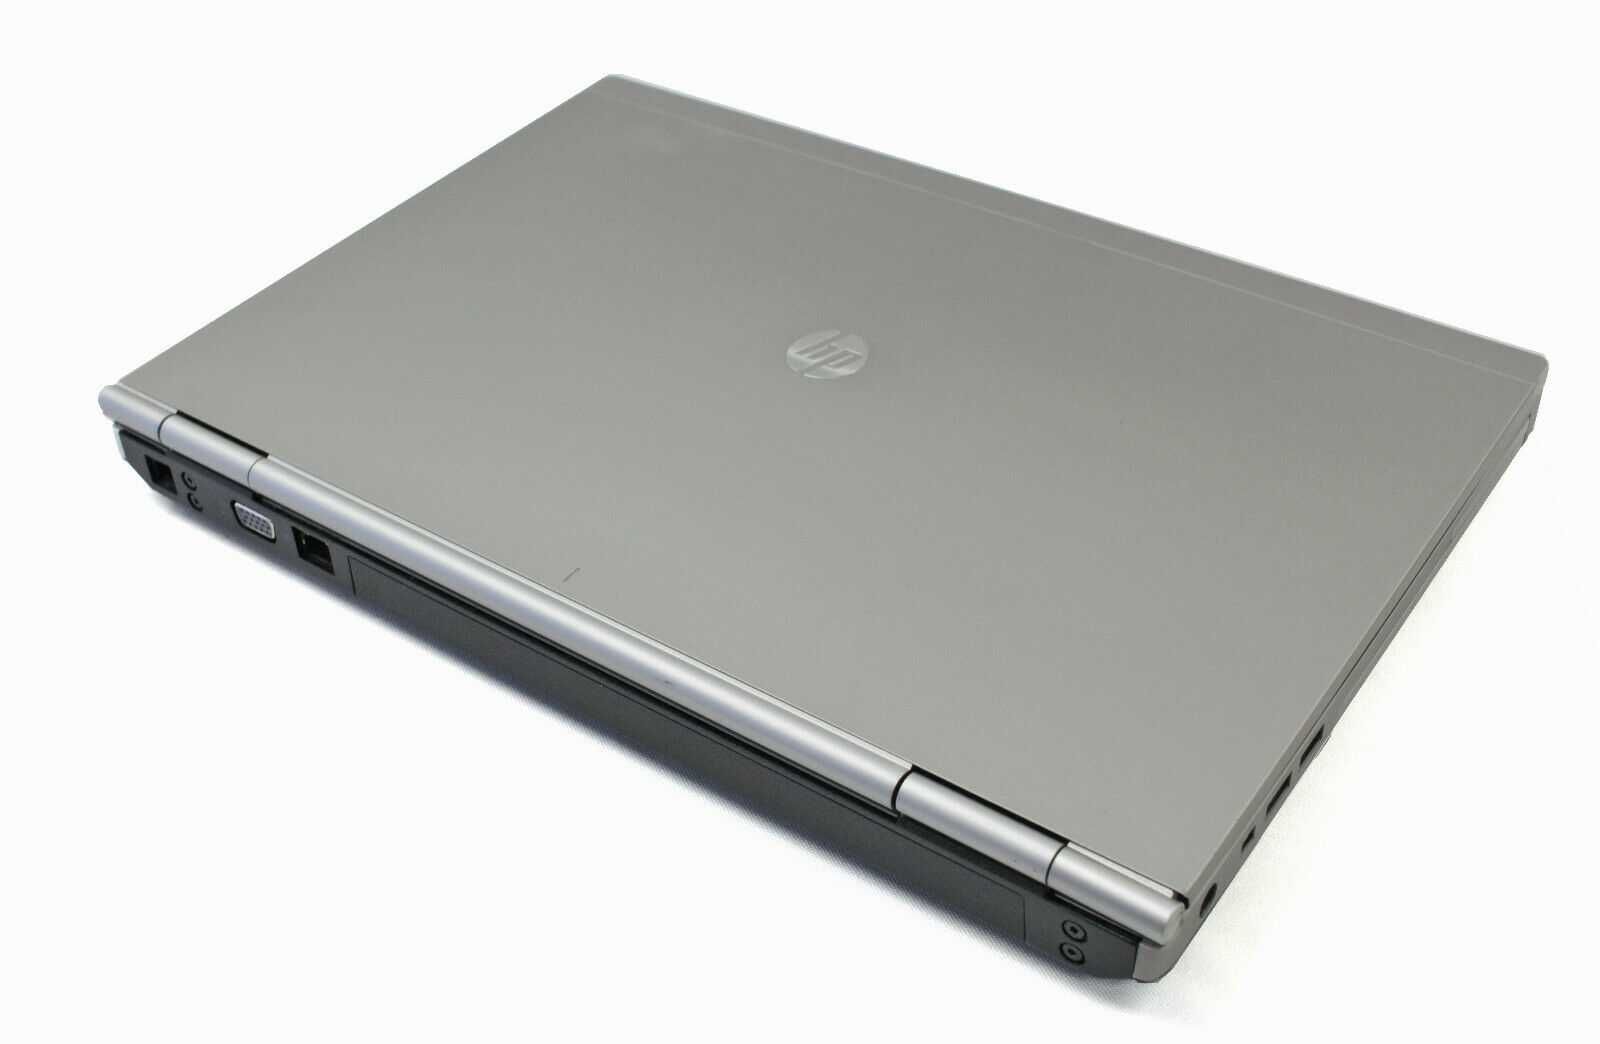 Лаптоп HP 8460P I7-2620M 8GB 500GB HDD 1600x900 с Windows 10